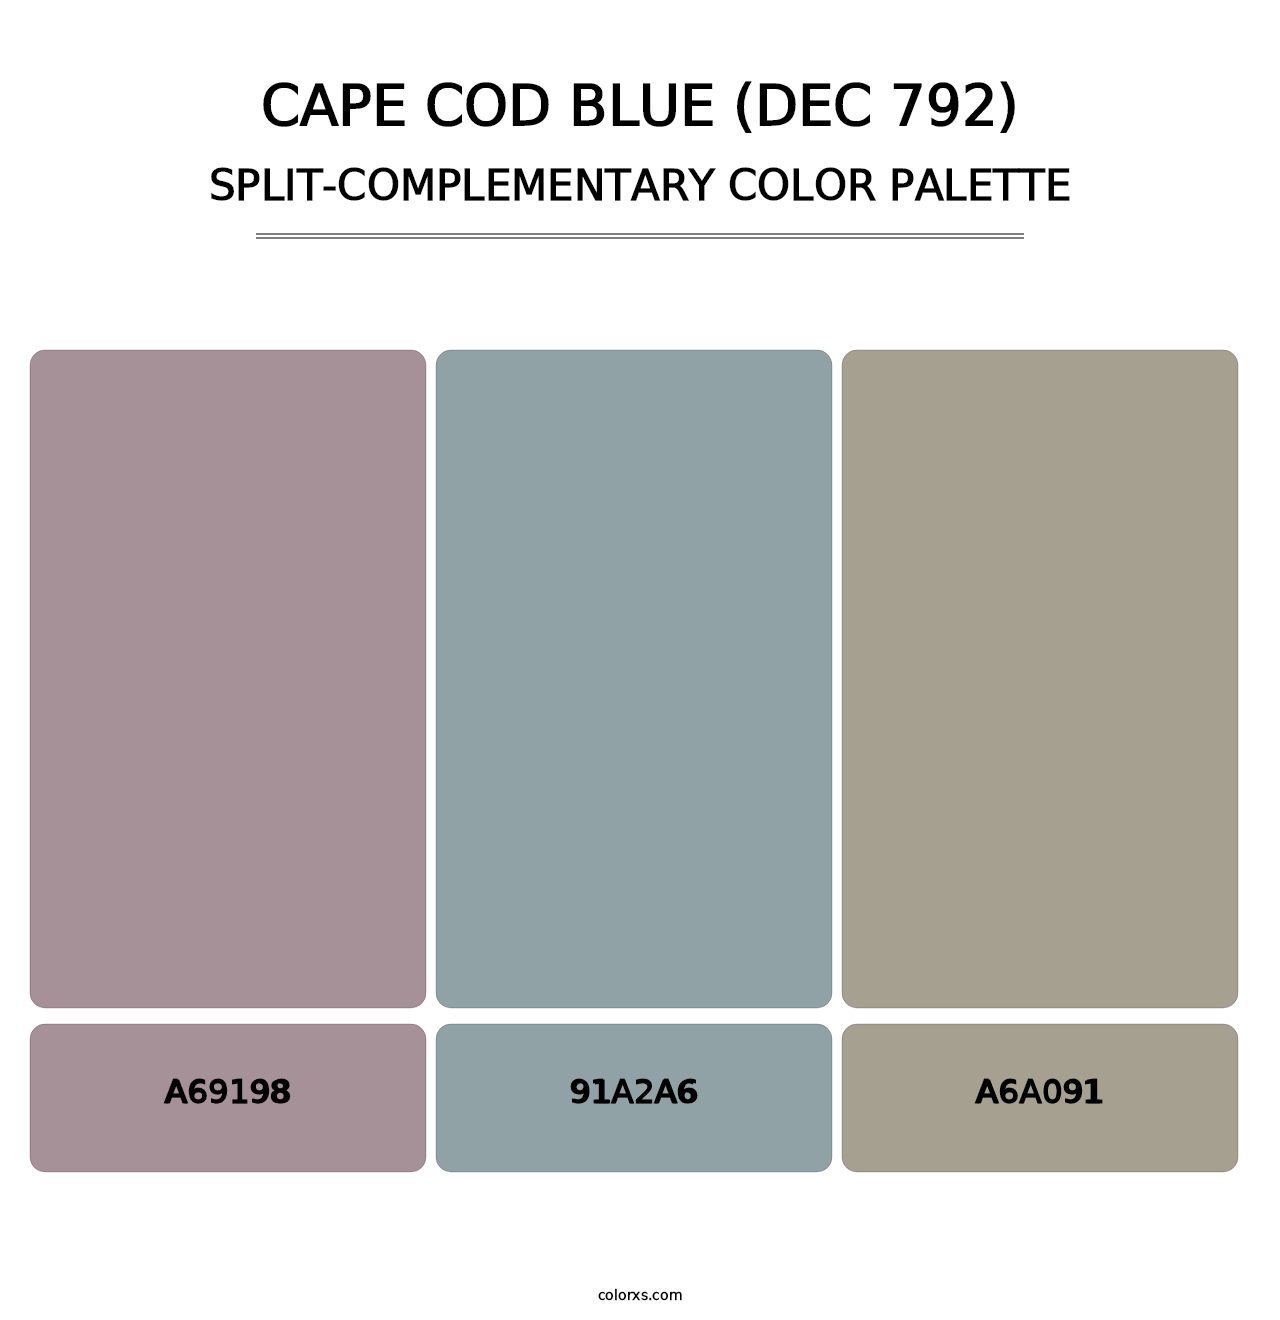 Cape Cod Blue (DEC 792) - Split-Complementary Color Palette